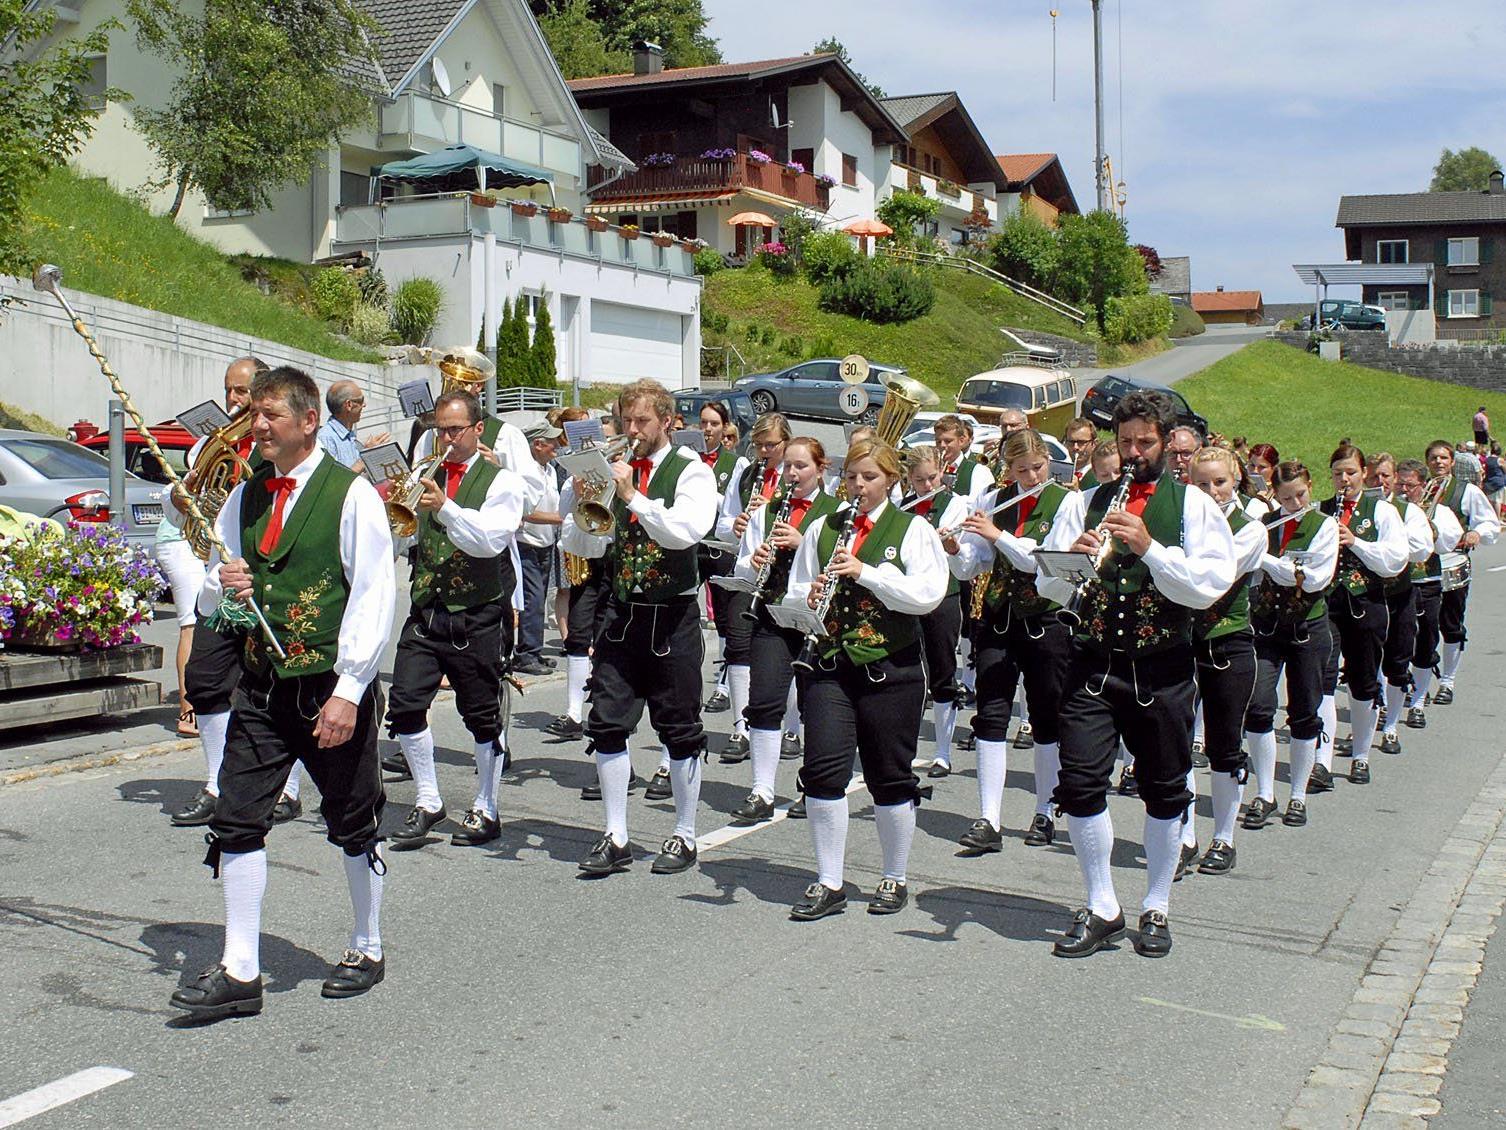 Musikverein Harmonie Sonntag beim Umzug anlässlich des Bezirksmusikfestes in Thüringerberg